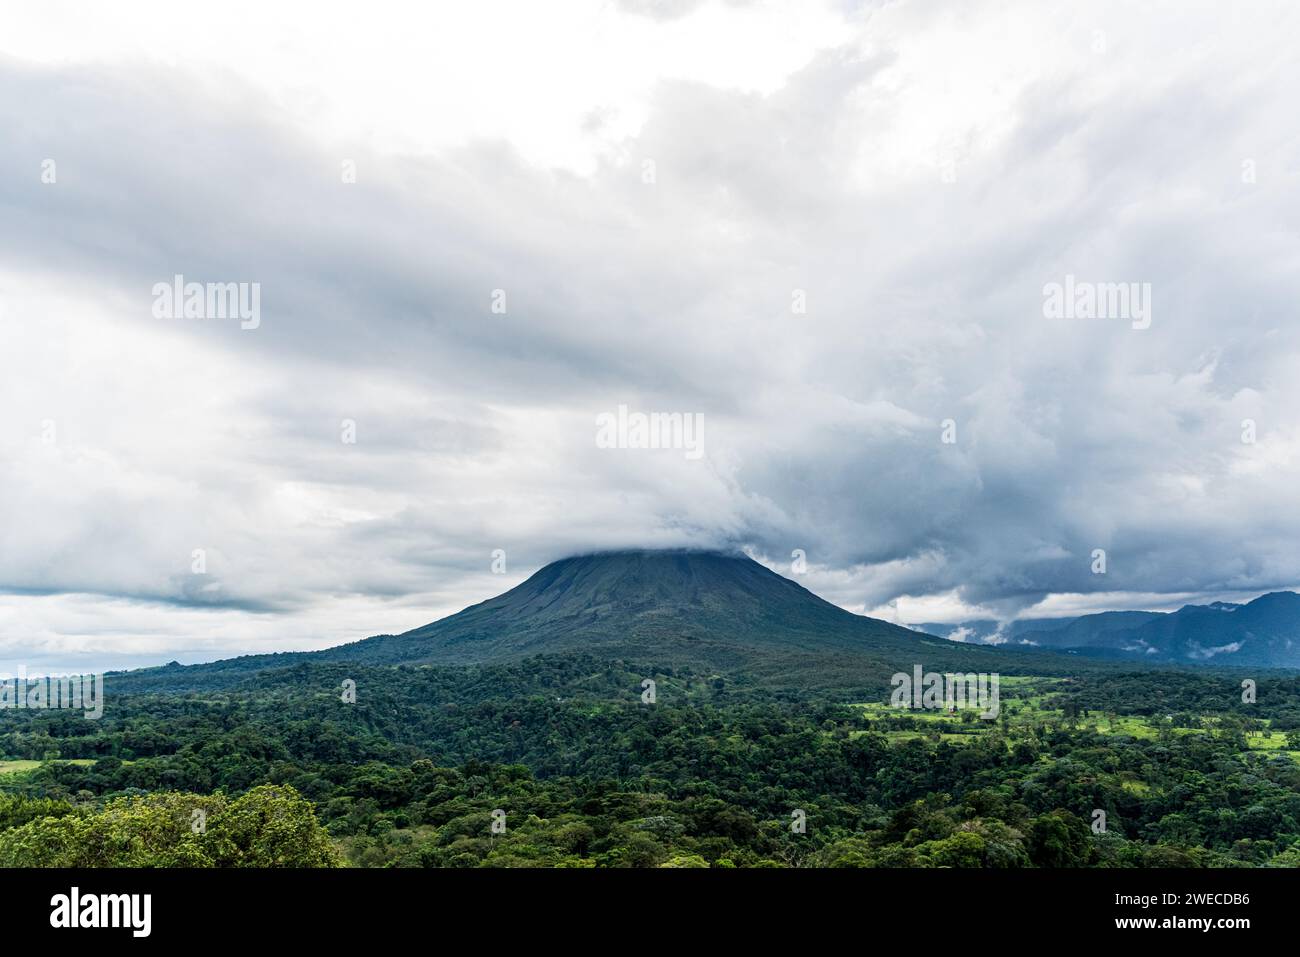 Scopri Arenal: Il maestoso vulcano della Costa Rica, simbolo della potenza pura e della bellezza naturale nel cuore di paesaggi lussureggianti Foto Stock